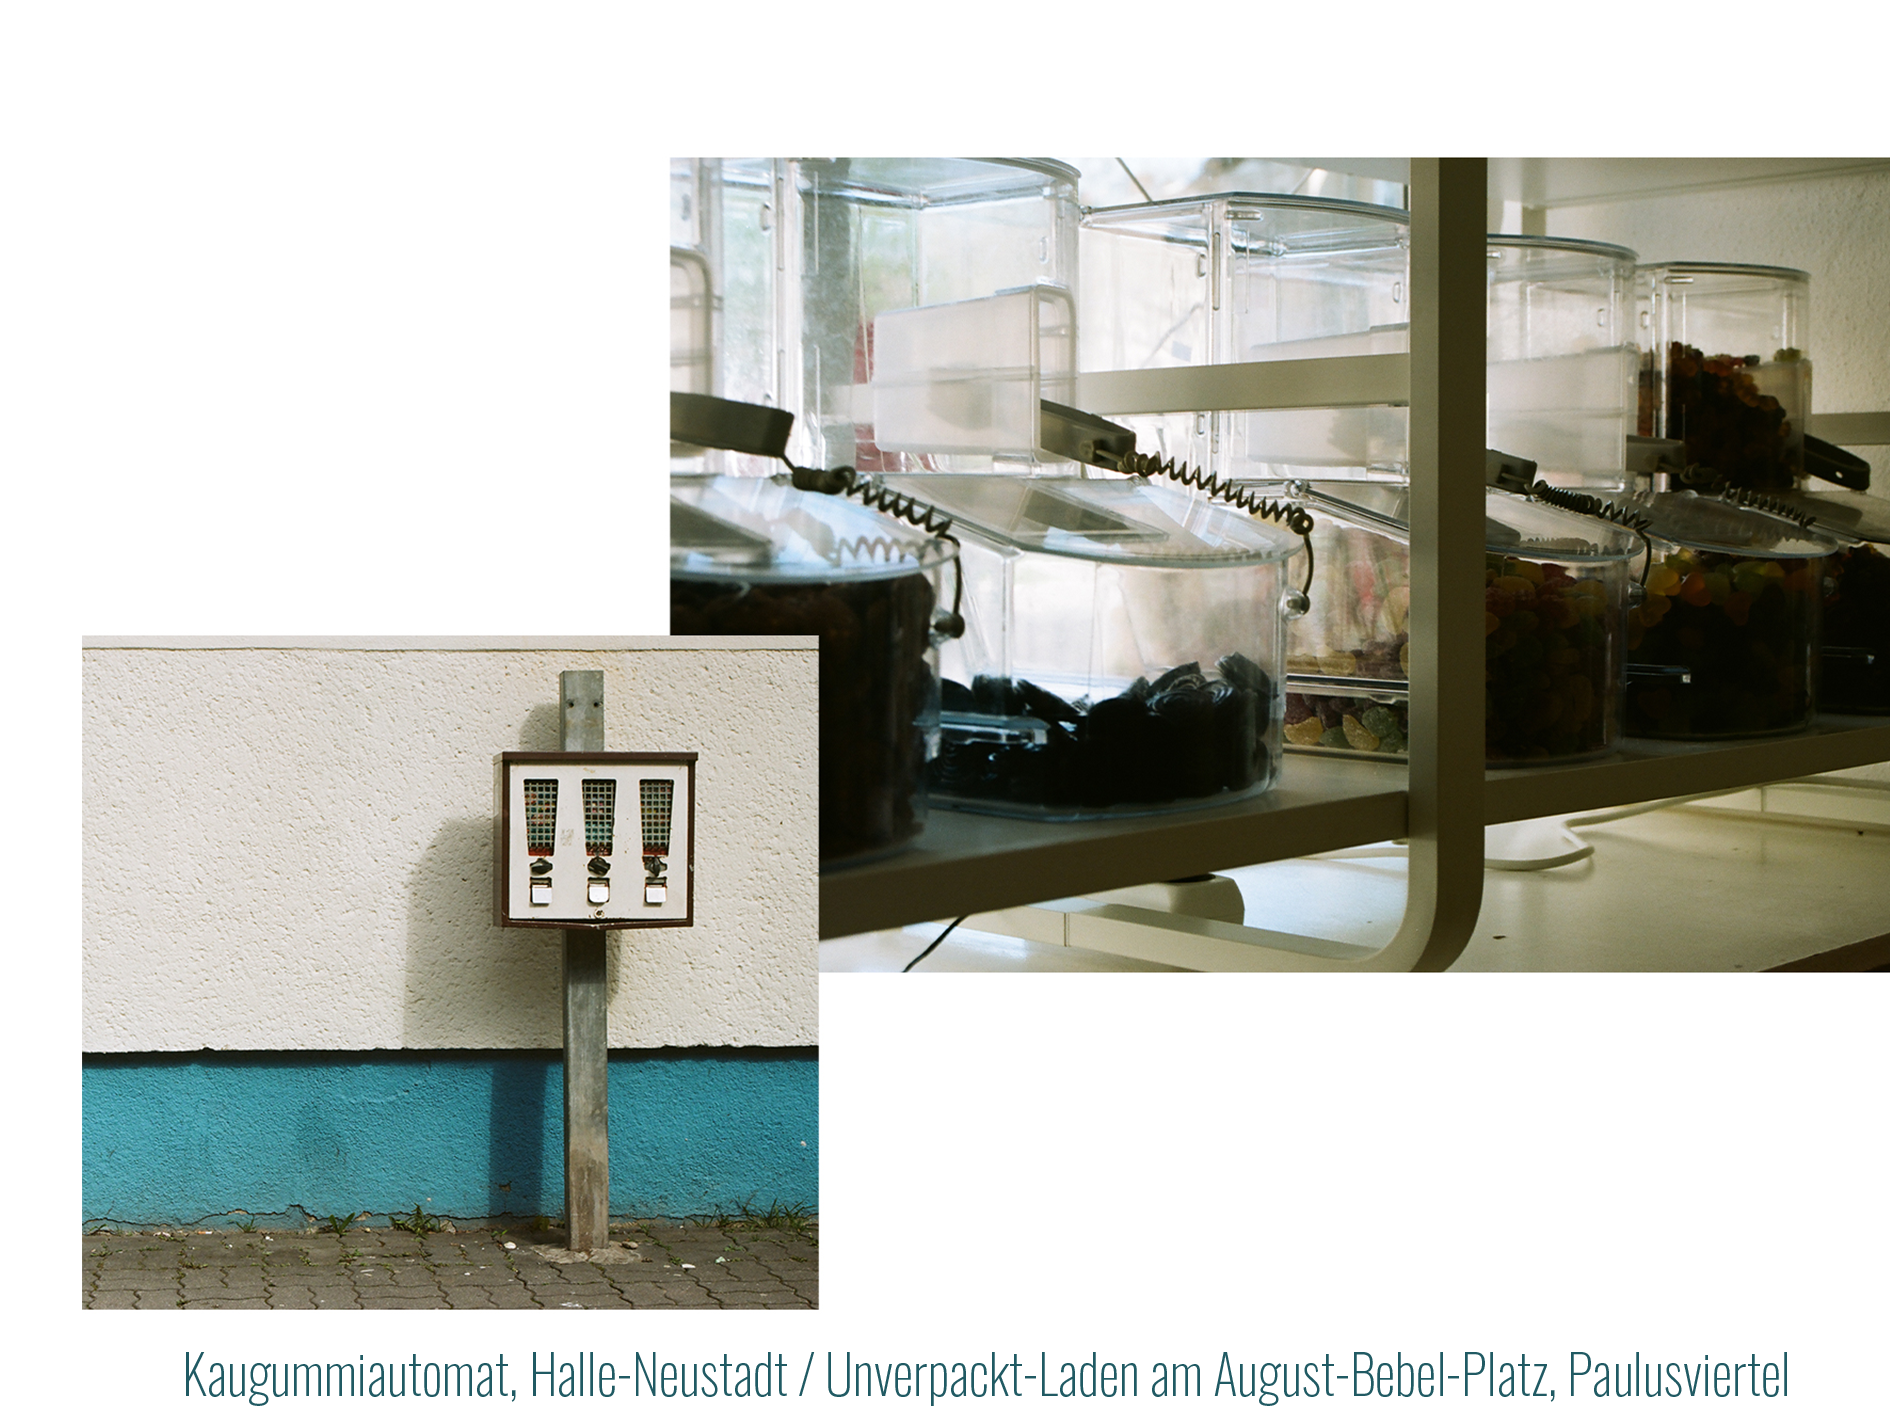 Ein Kaugummiautomat vor einer blau/weißen Hauswand in Halle-Neustadt.
            In Kontrast zu
            Aufbewahrungsbehälter für Süßigkeiten im Unverpackt-Laden am August-Bebel-Platz. 